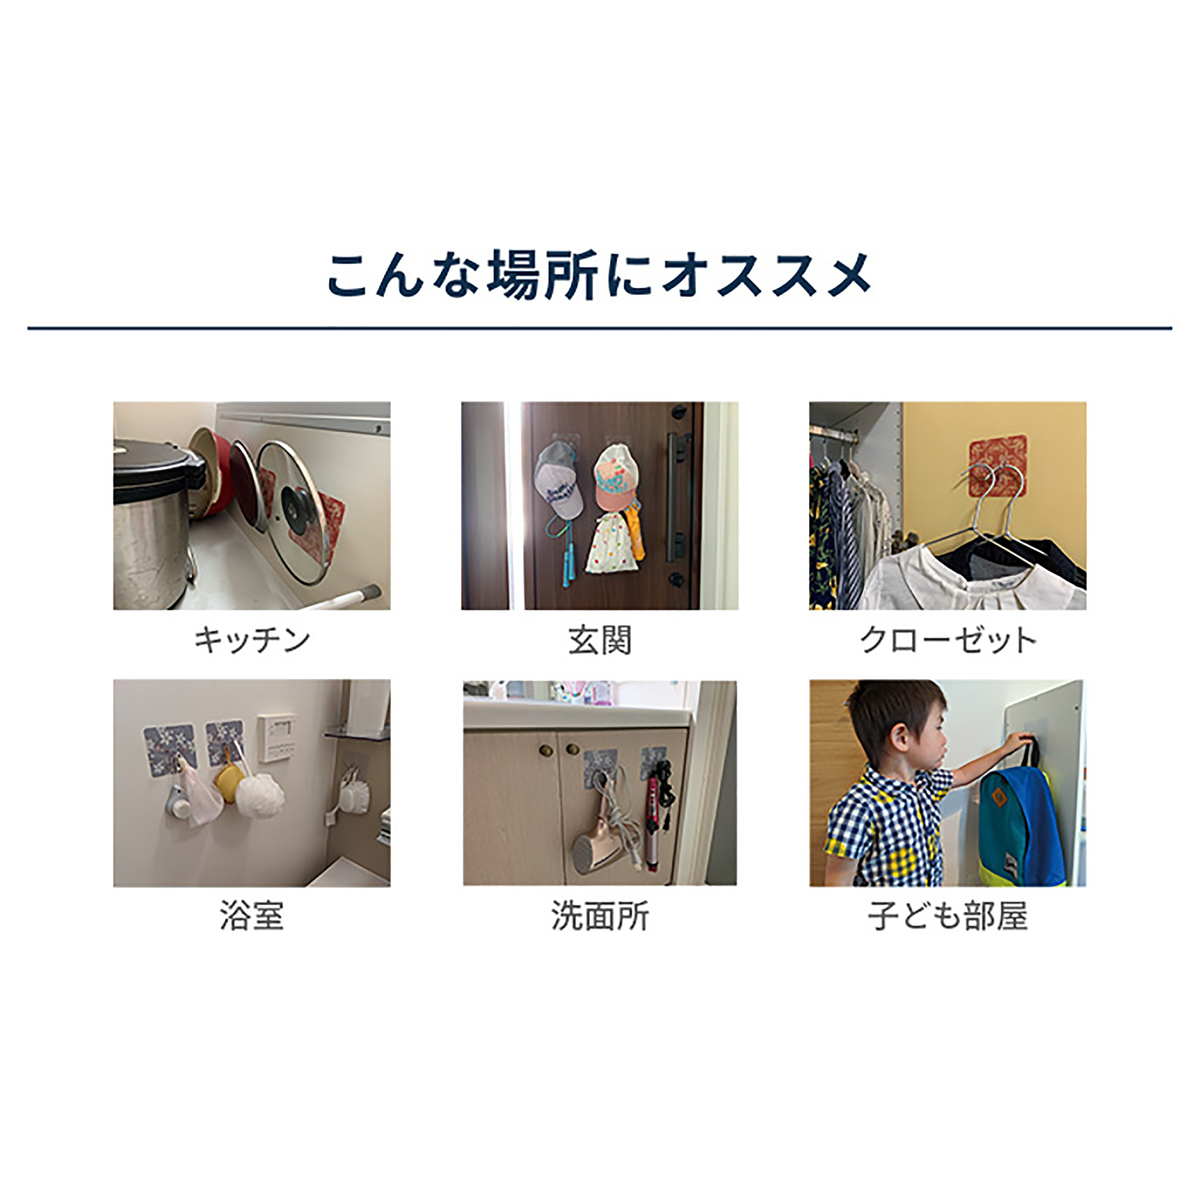 おしゃれに美しく壁に収納Vフック 10点セット - QVC.jp